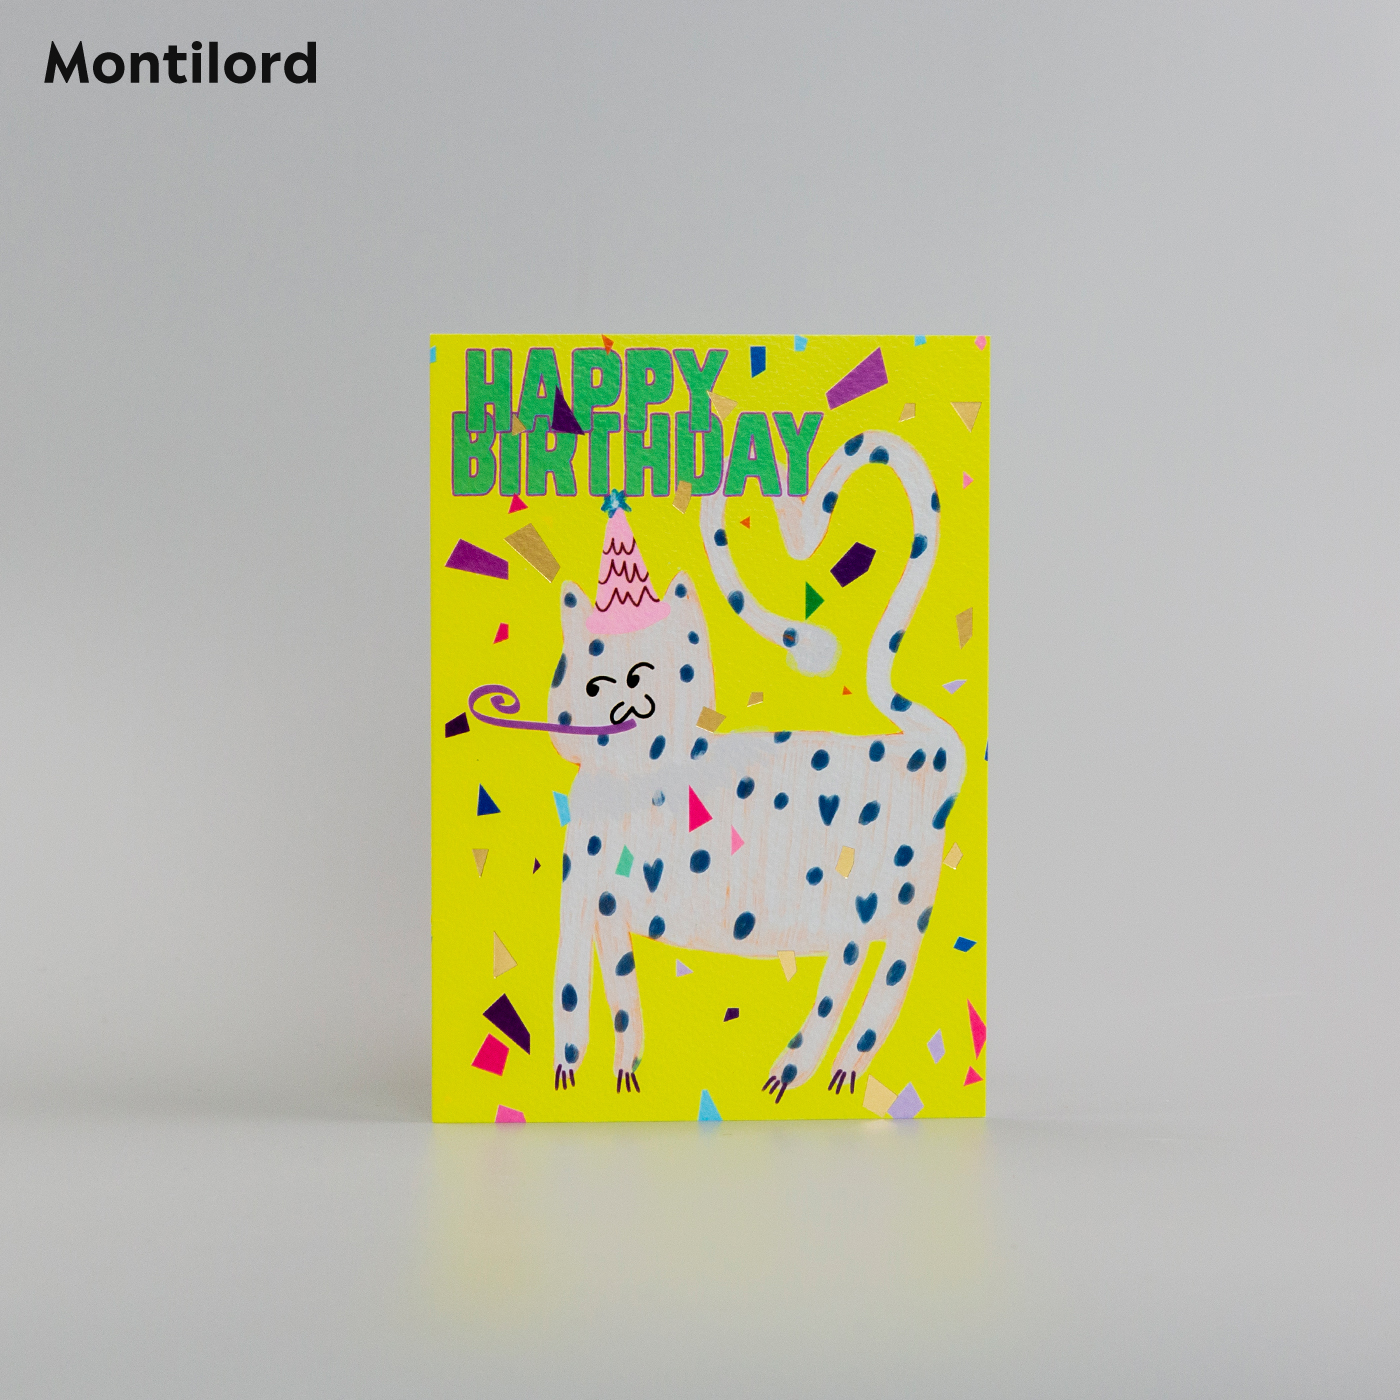 『Montilord』对折贺卡 大号 带信封 热烈庆祝 节日中秋情人圣诞礼品心意周年纪念对象生日满岁年